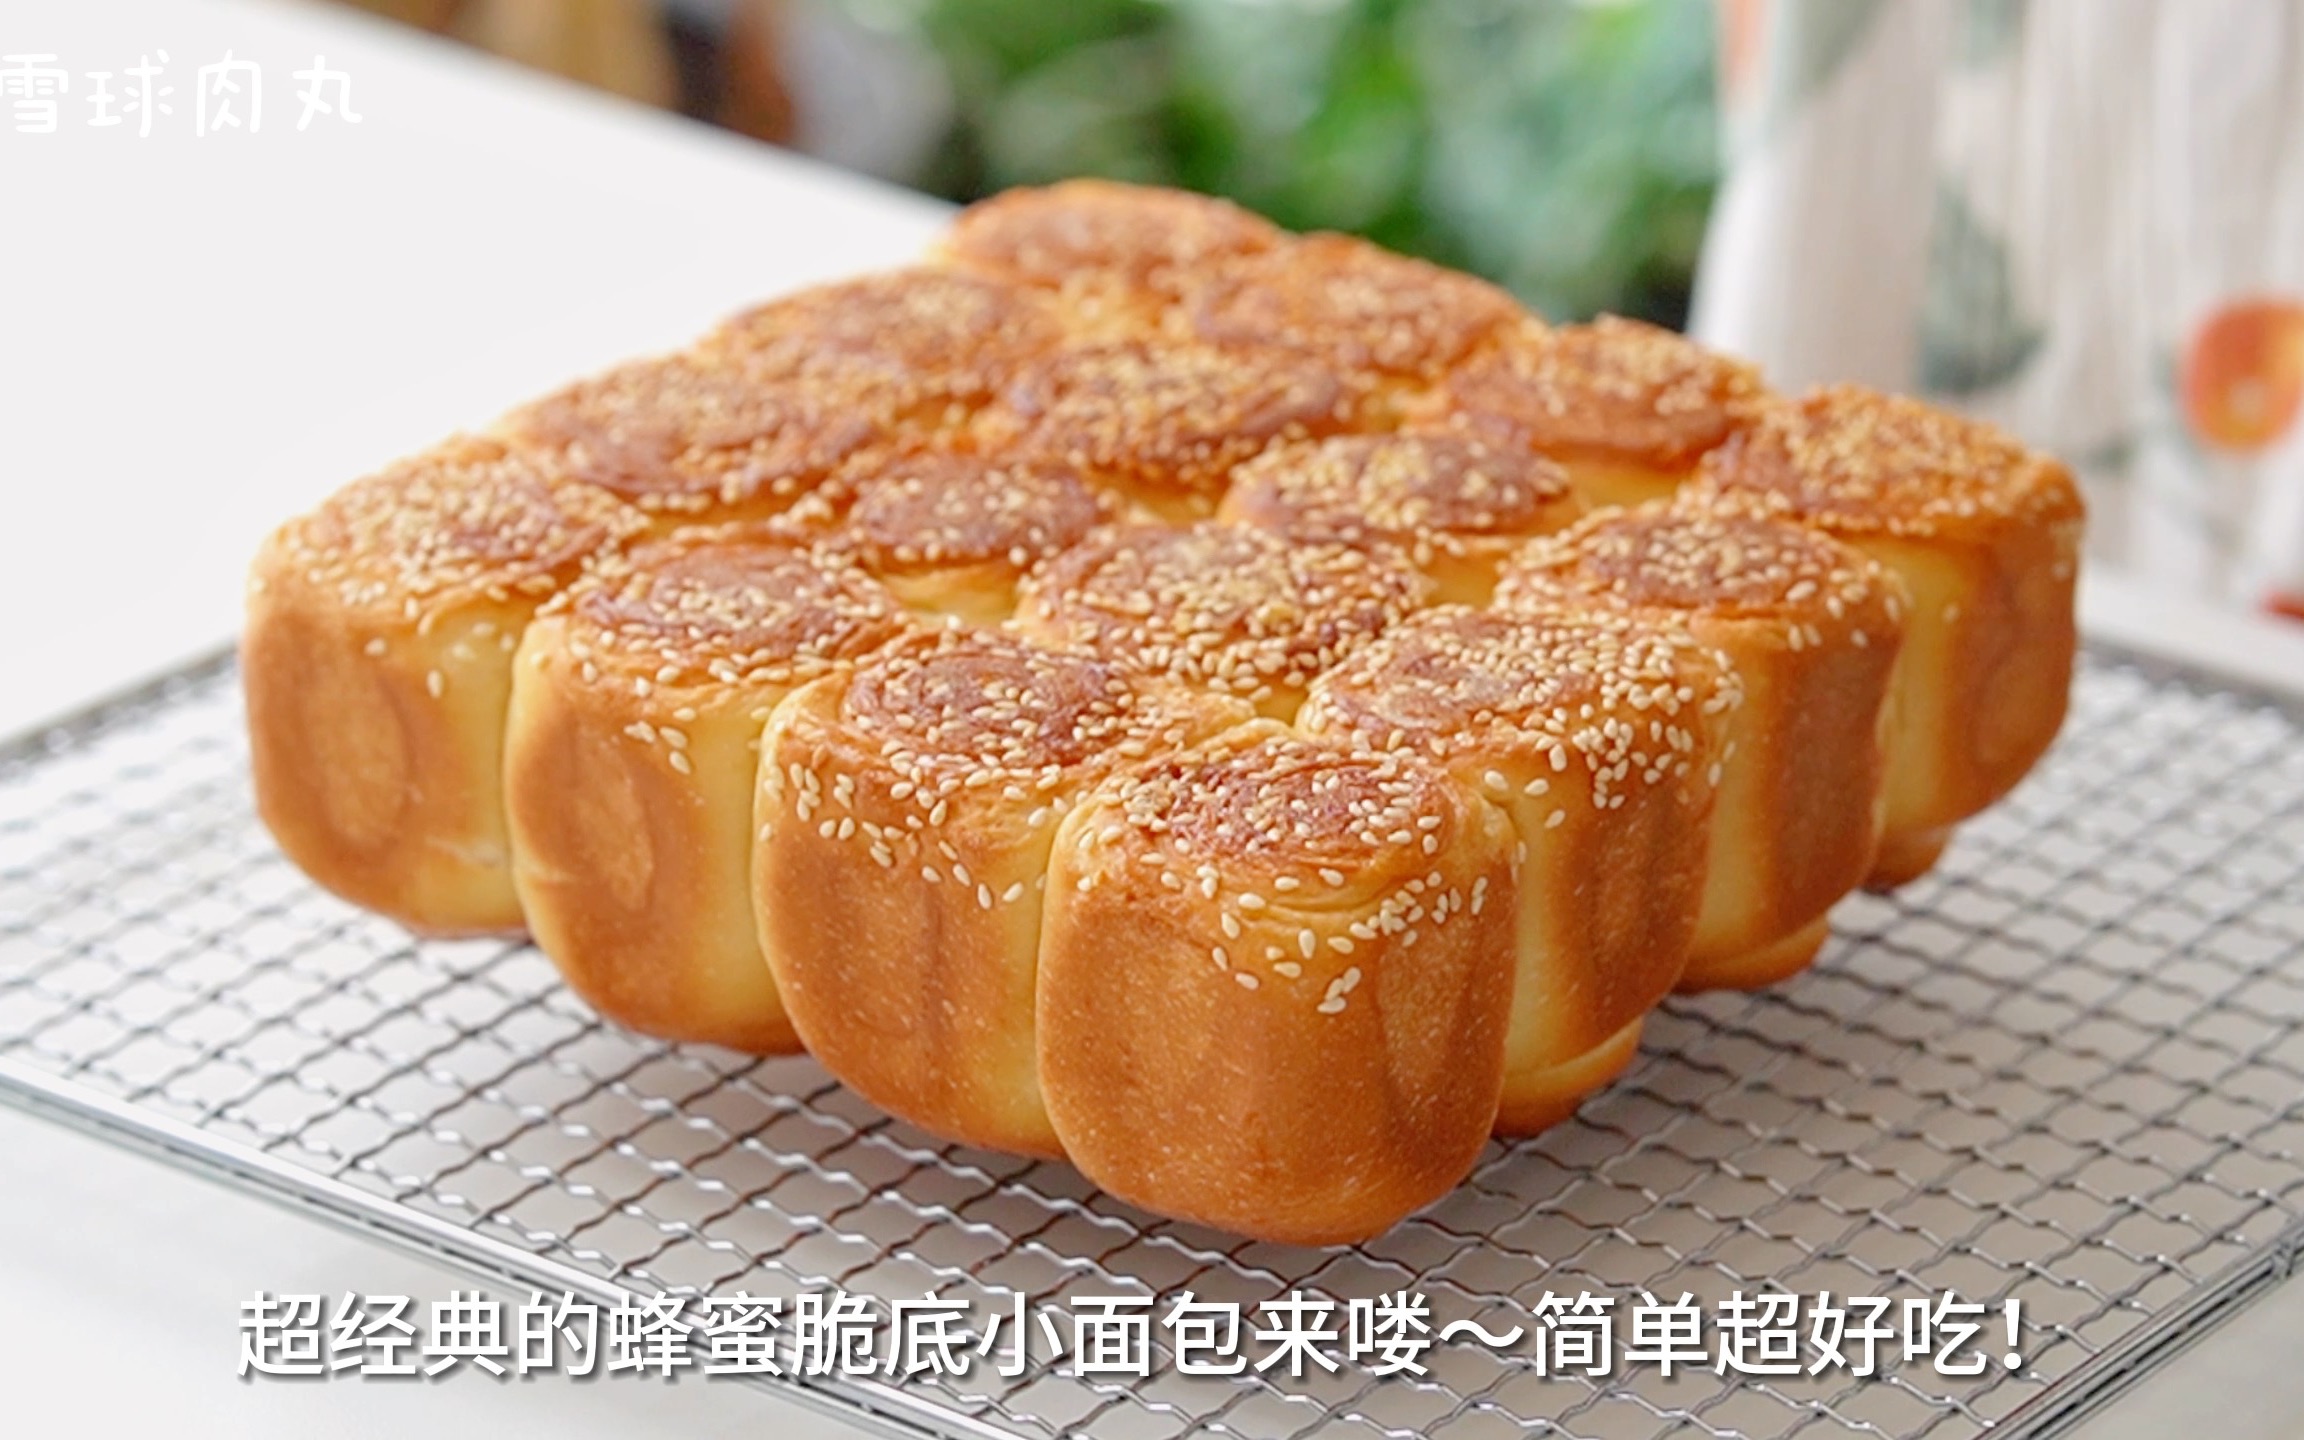 超经典的蜂蜜脆底小面包🍞松软香甜超好吃❗️